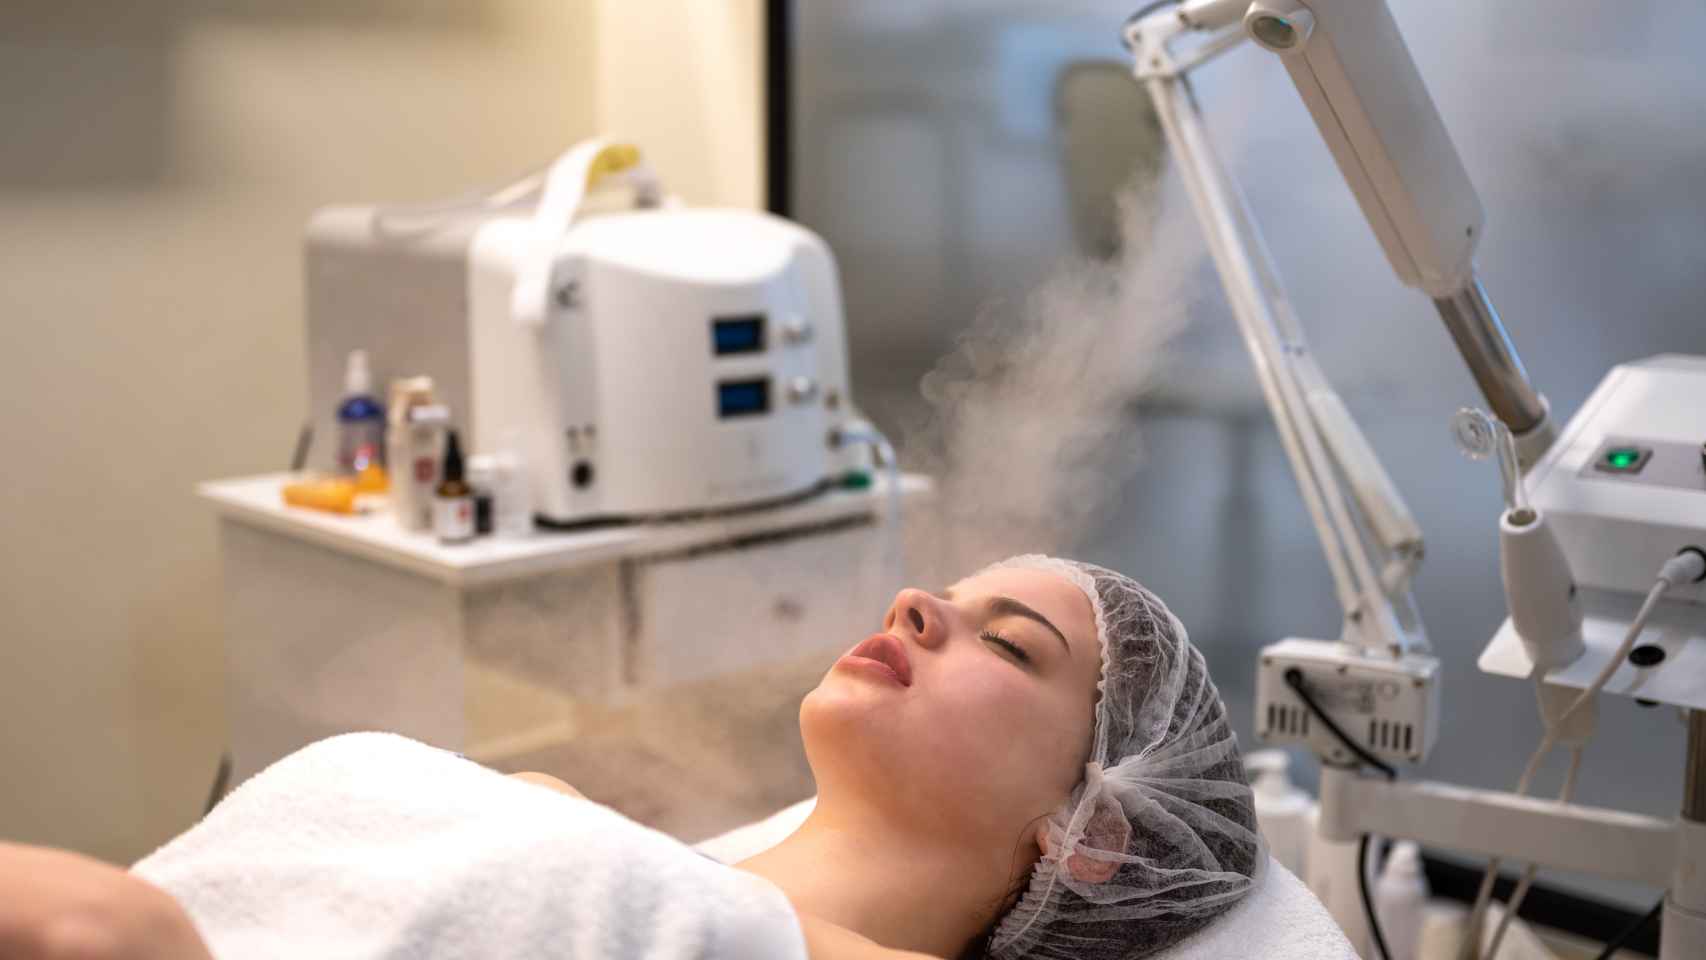 Ozonoterapia: en qué consiste y por qué es tan polémica